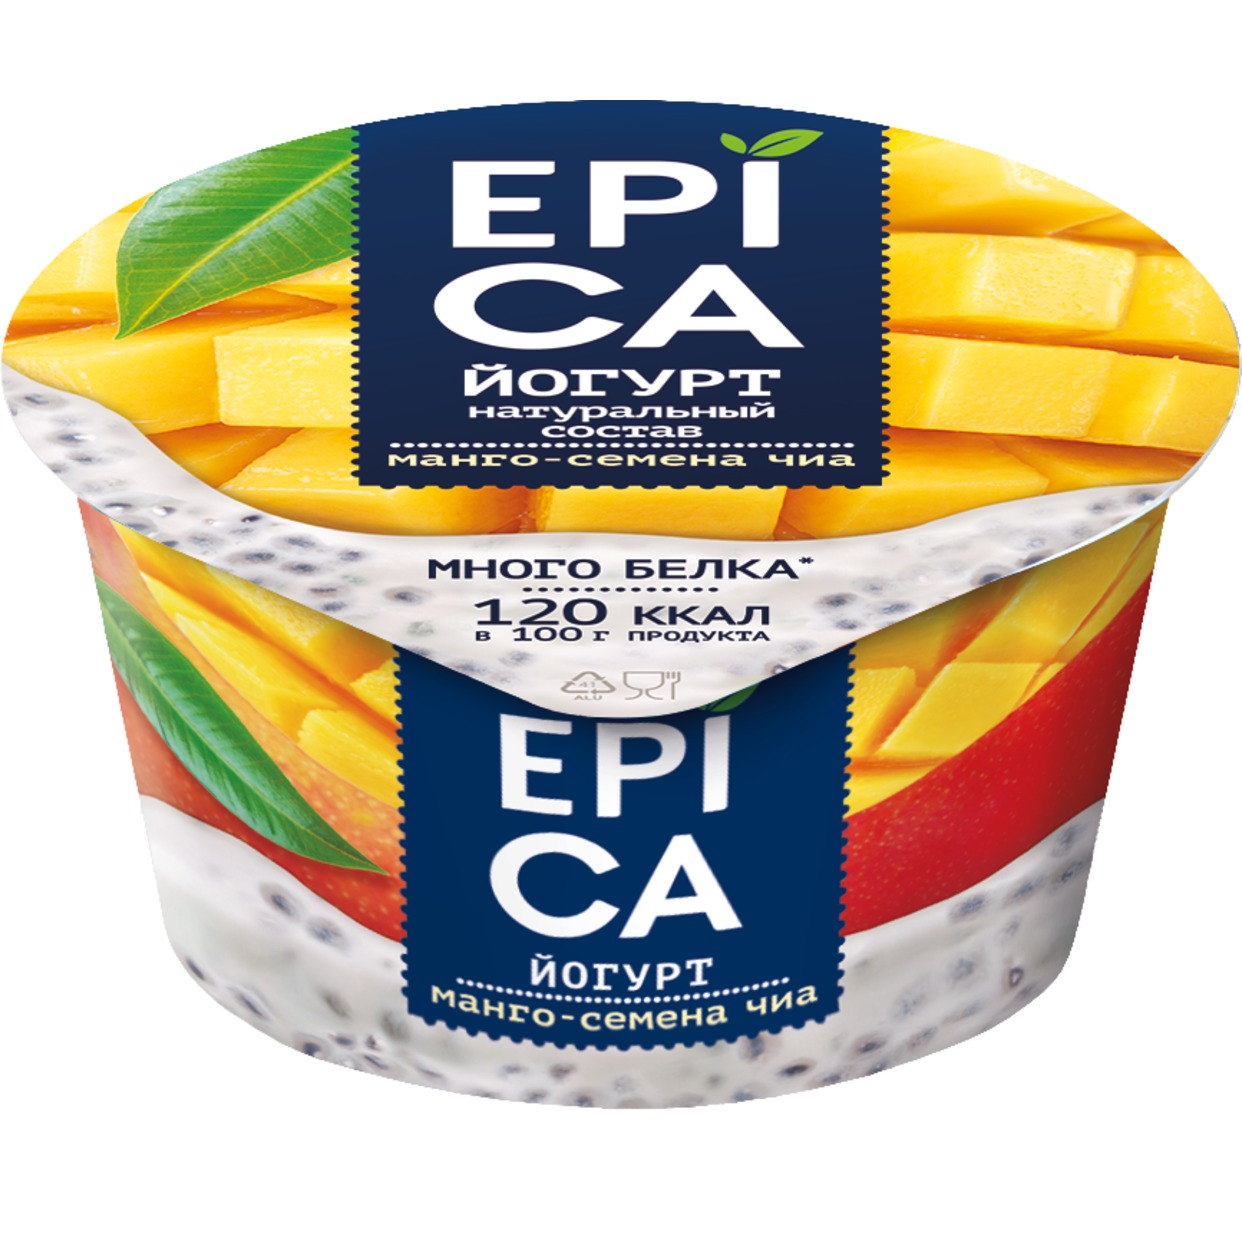 Йогурт Epica, манго-семена чиа, 130 г